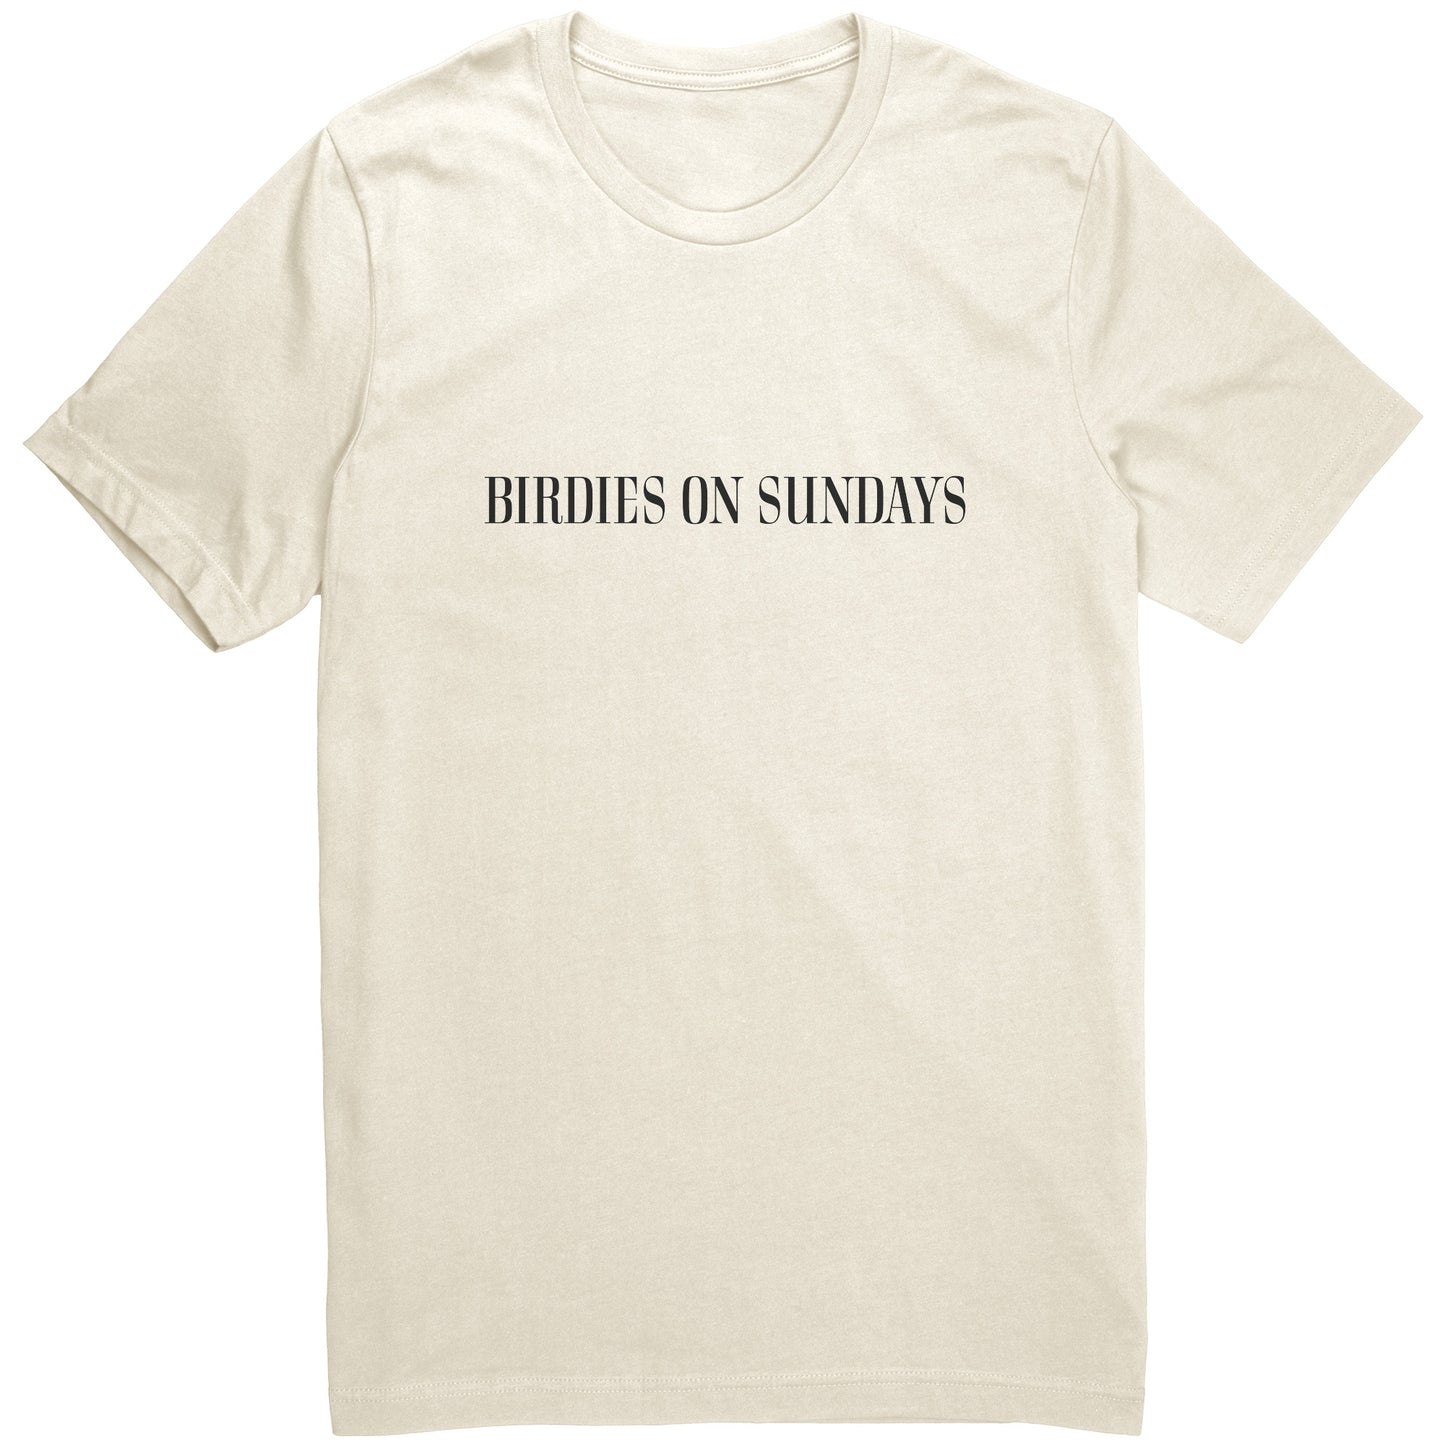 "Birdies on Sundays" T-Shirt